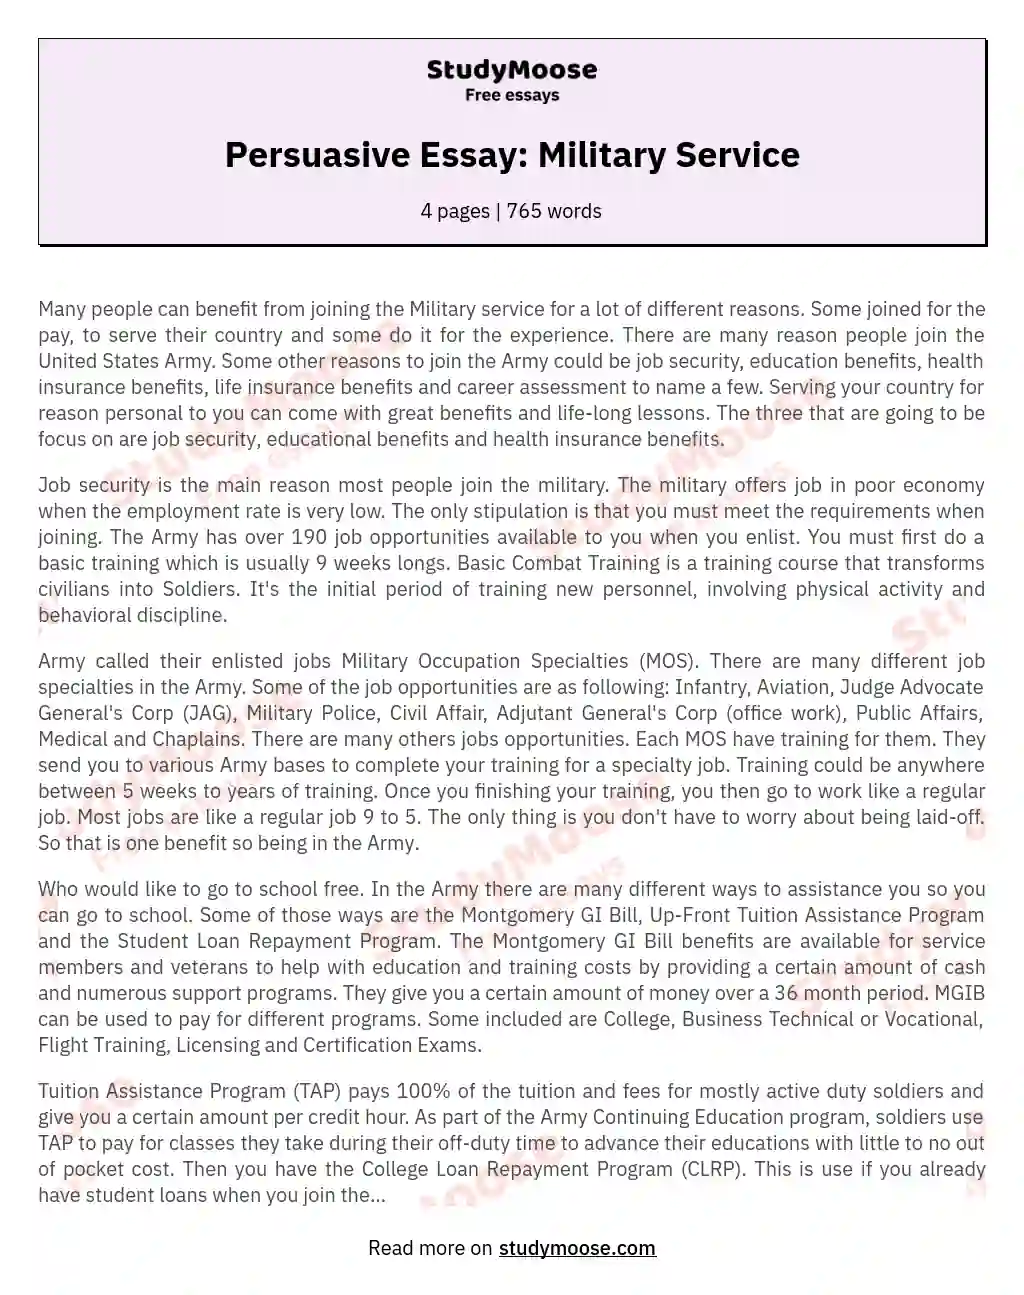 army persuasive essay topics